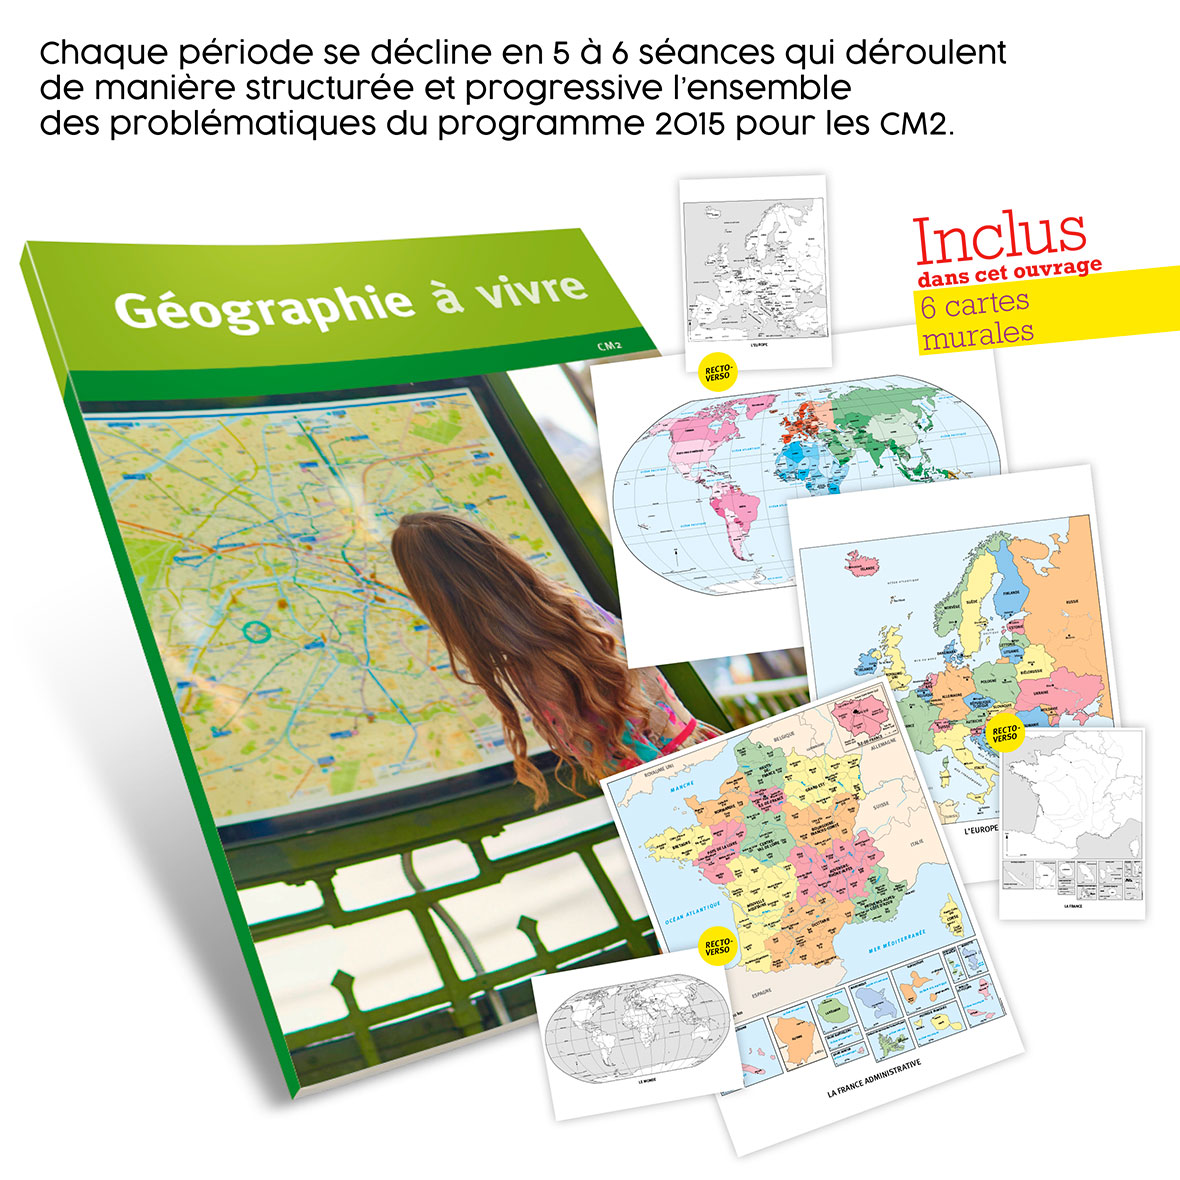 Geographie a vivre cm2 miniature 2 acces editions